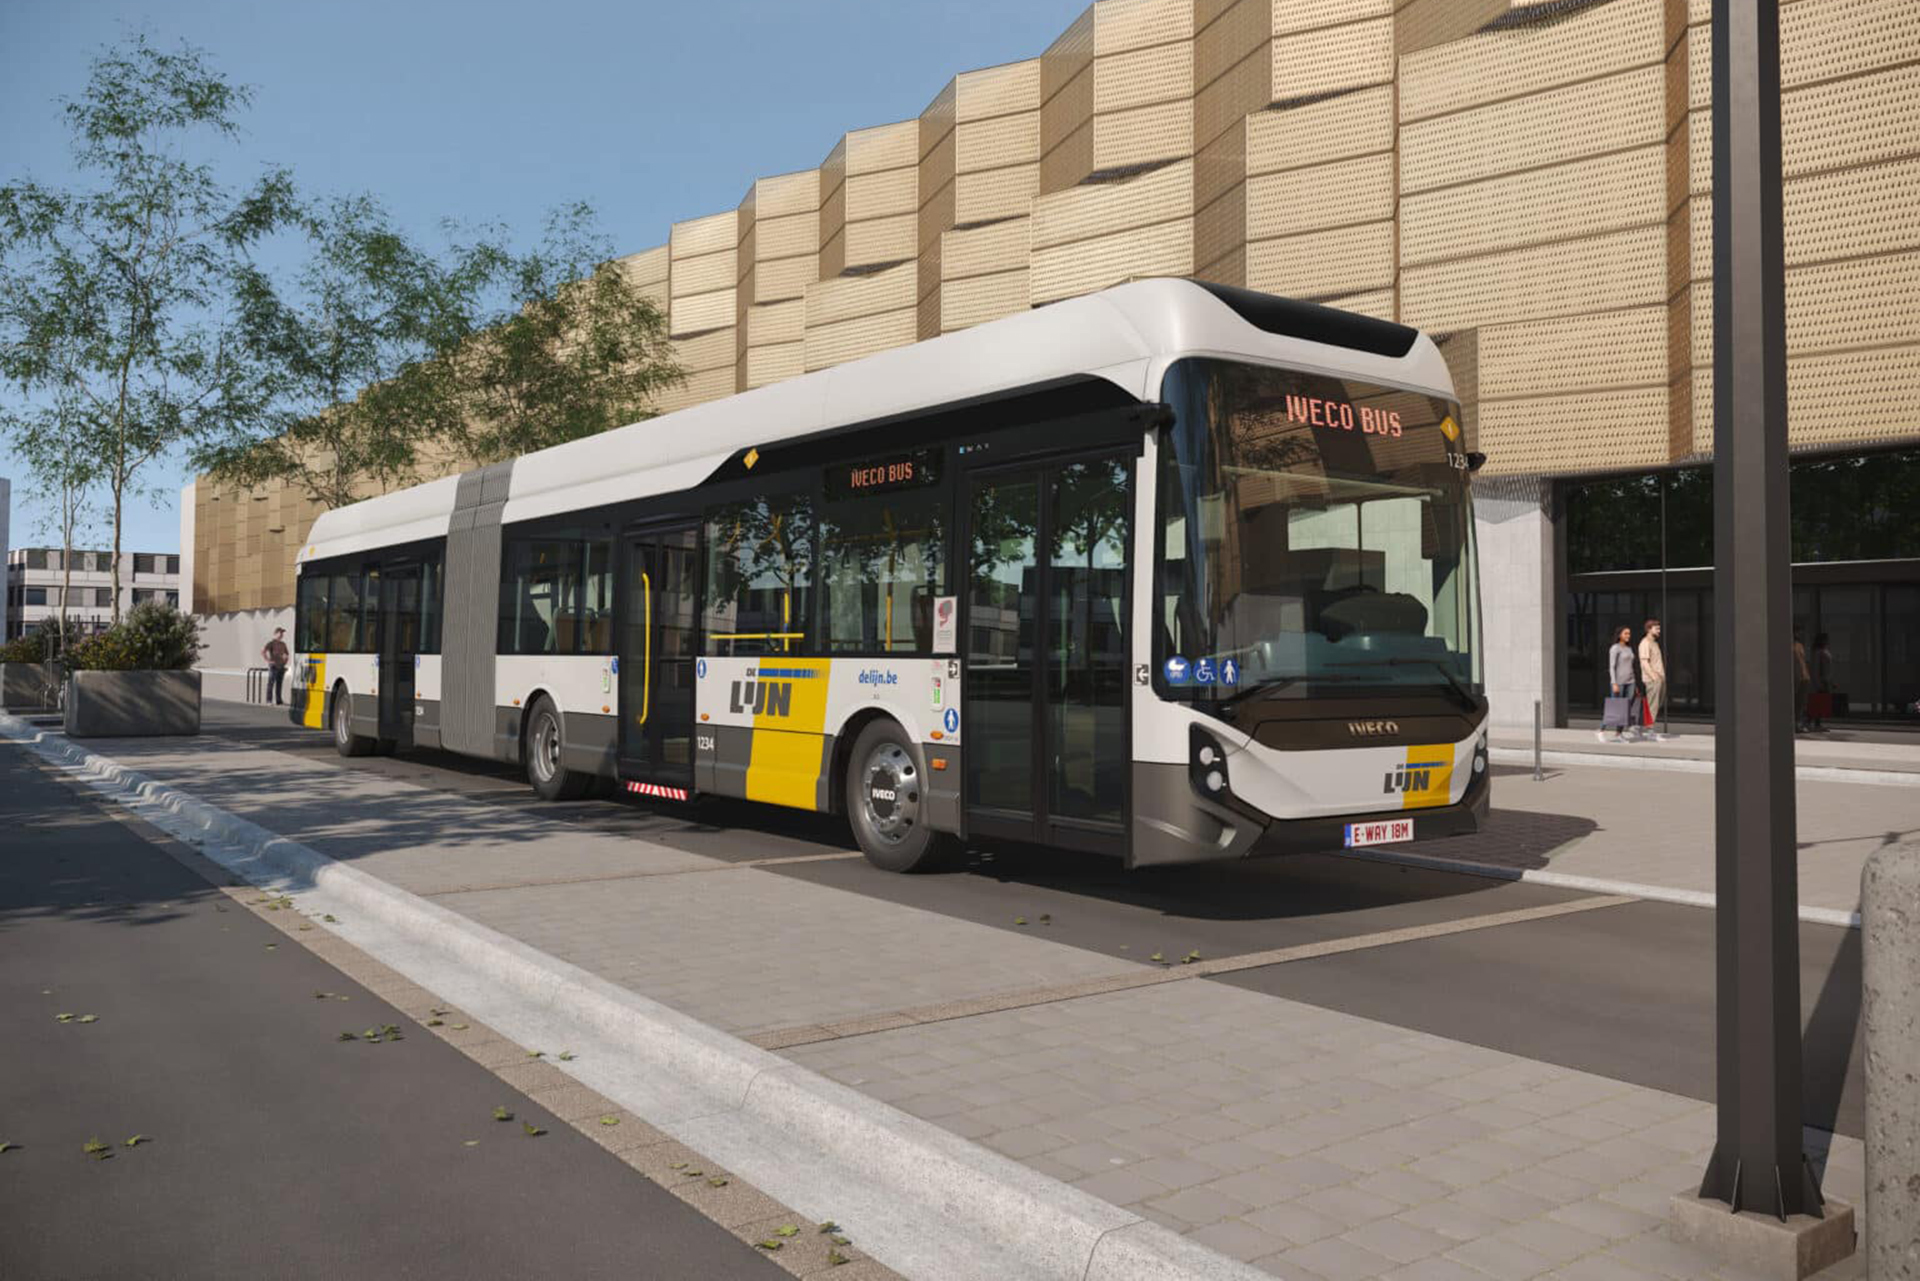 IVECO BUS tekent recordovereenkomst met De Lijn voor maximaal 500 volledig elektrische stadsbussen